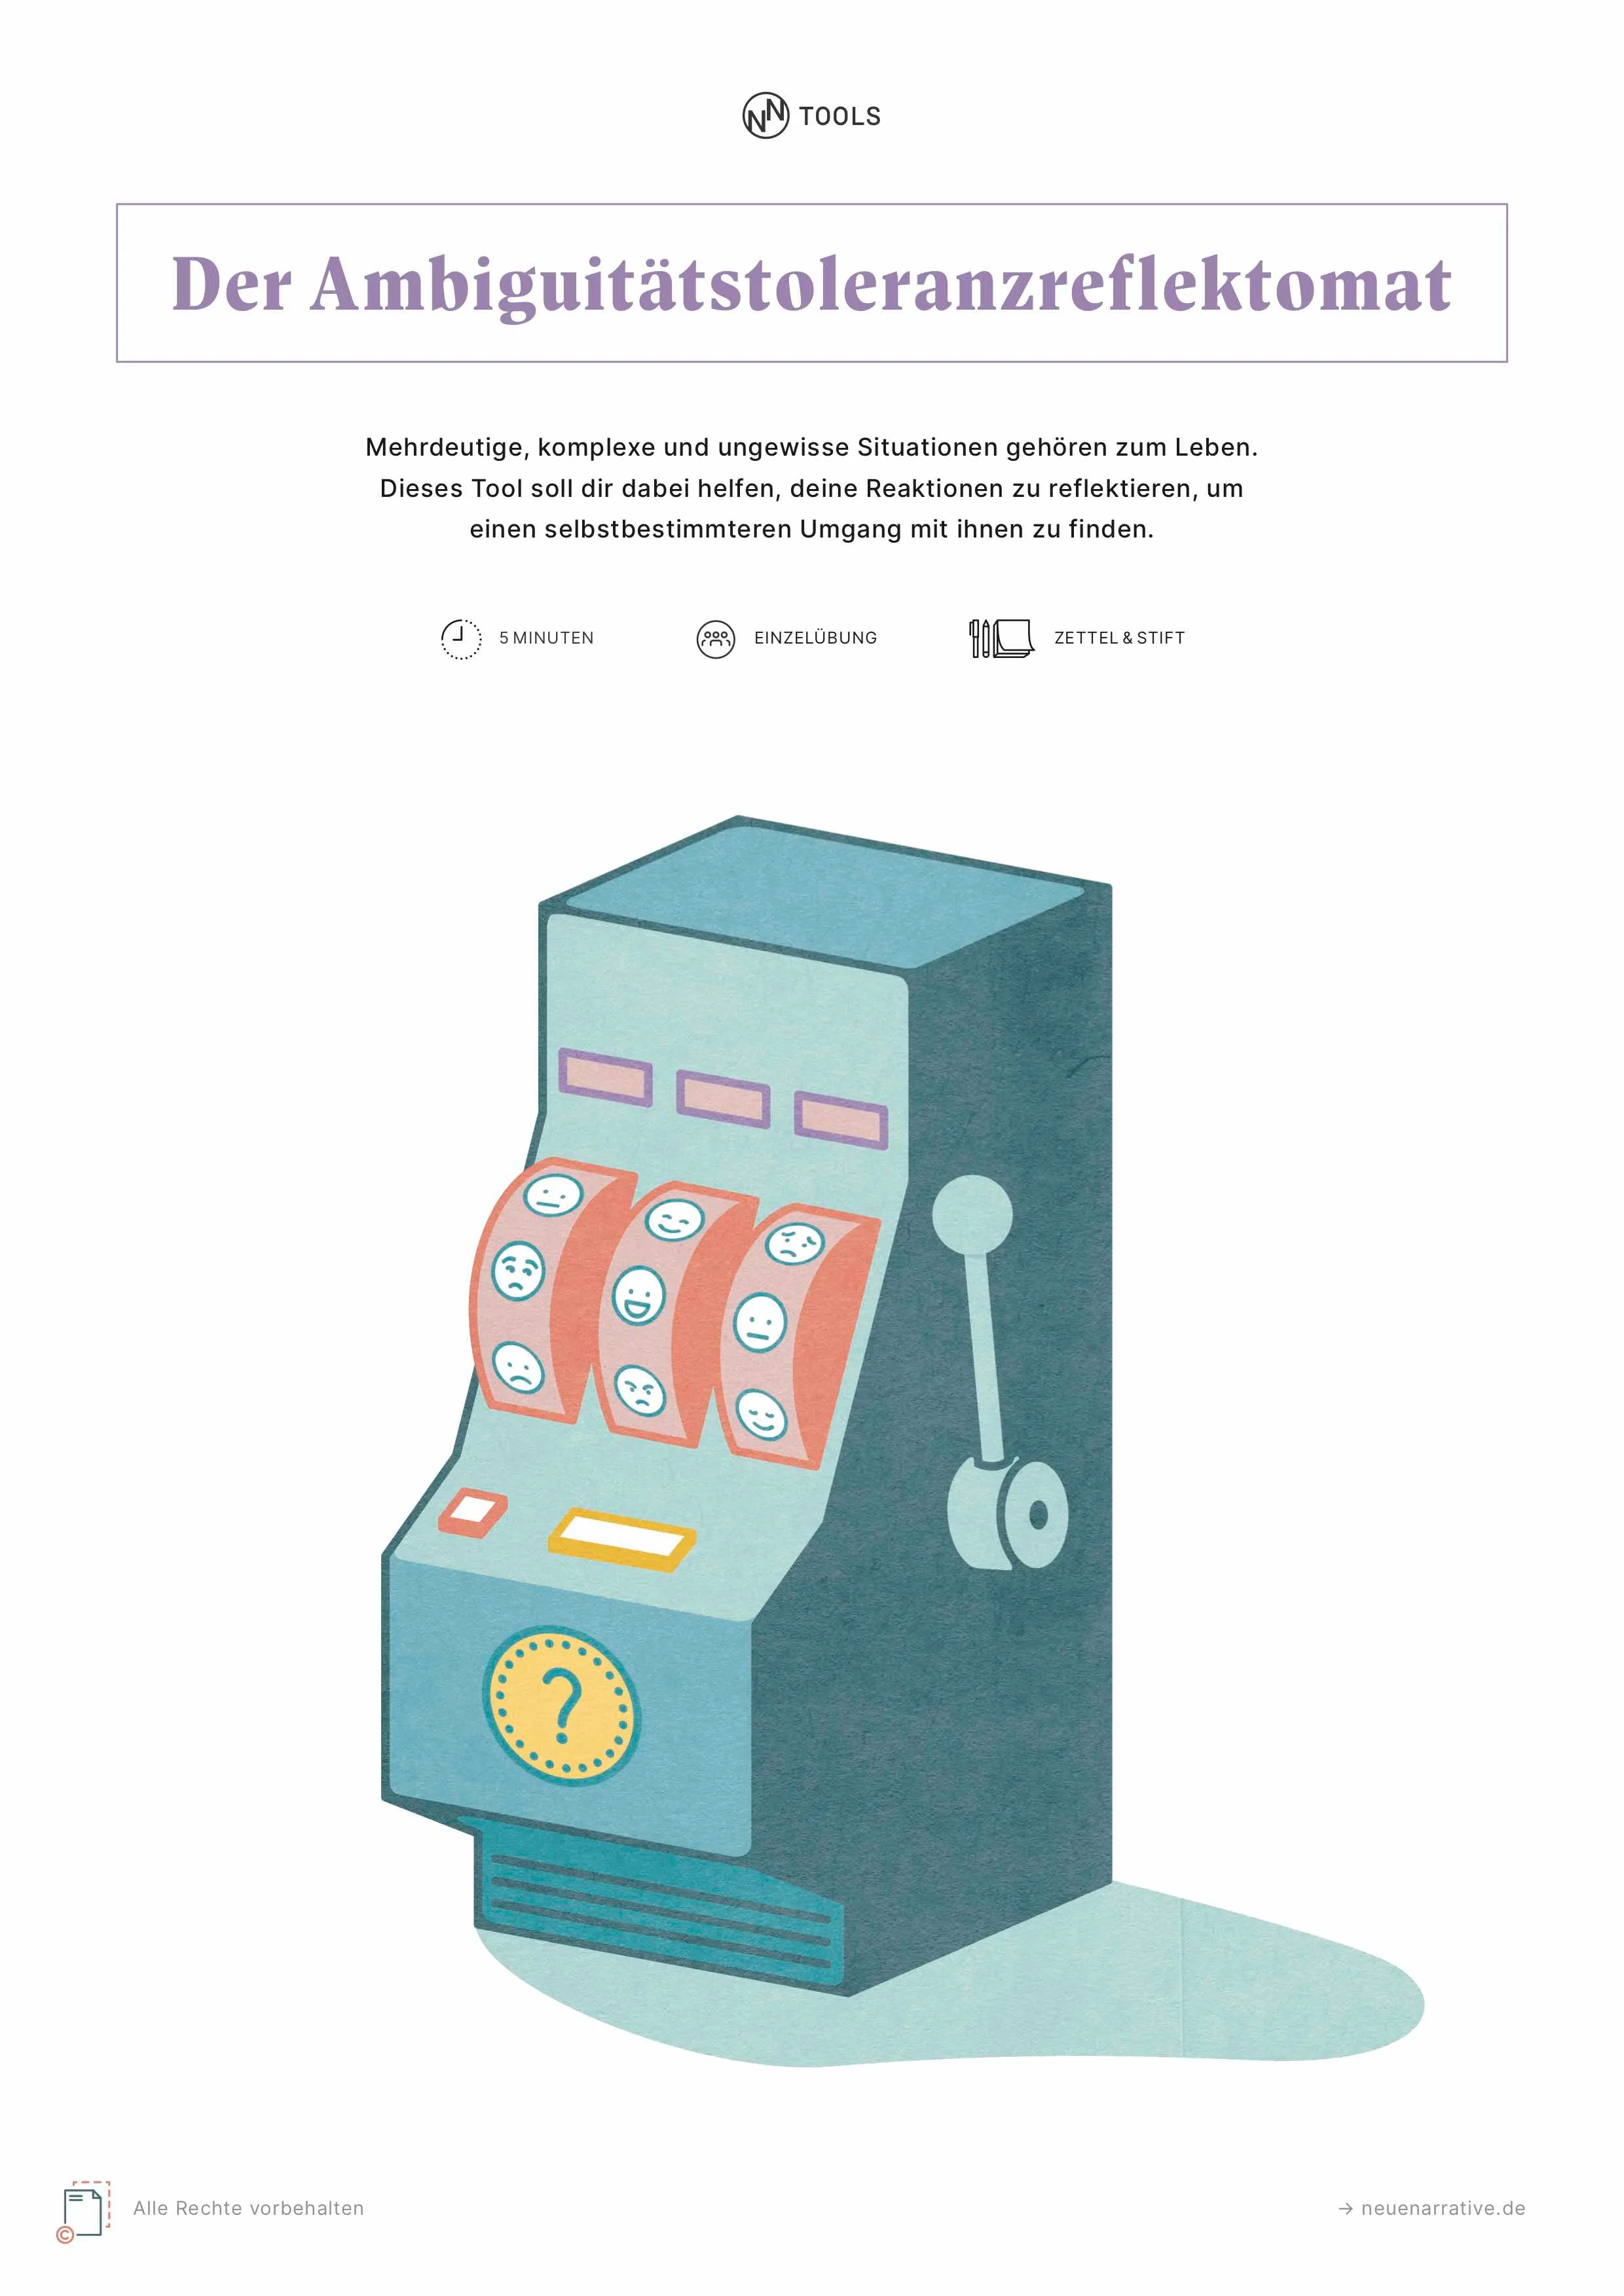 Ein Spielautomat auf dem Cover zum Ambiguitätsreflektomat